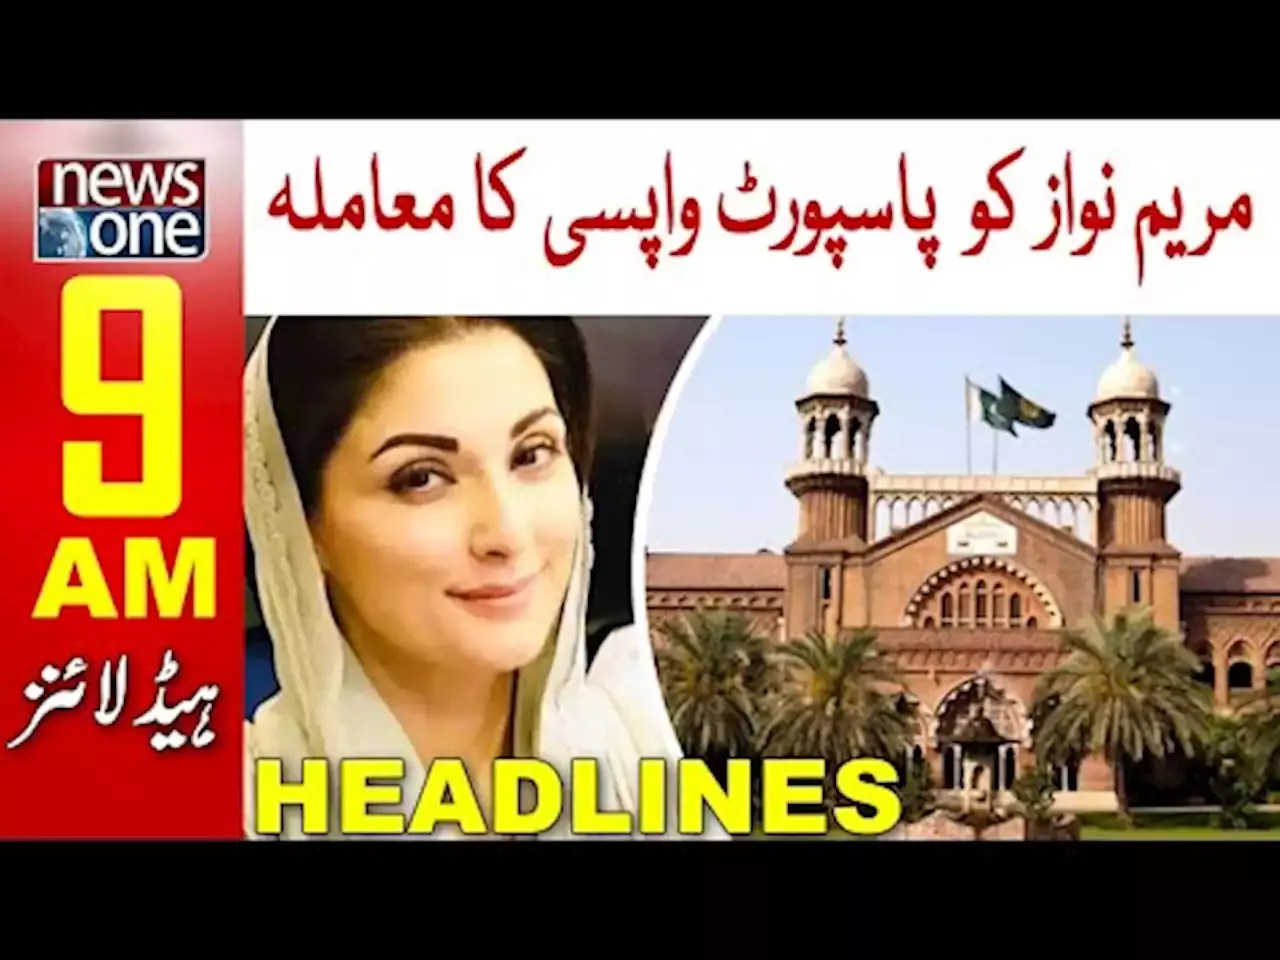 NewsOne 9 AM Headlines | Maryam Nawaz | 26 April 2022